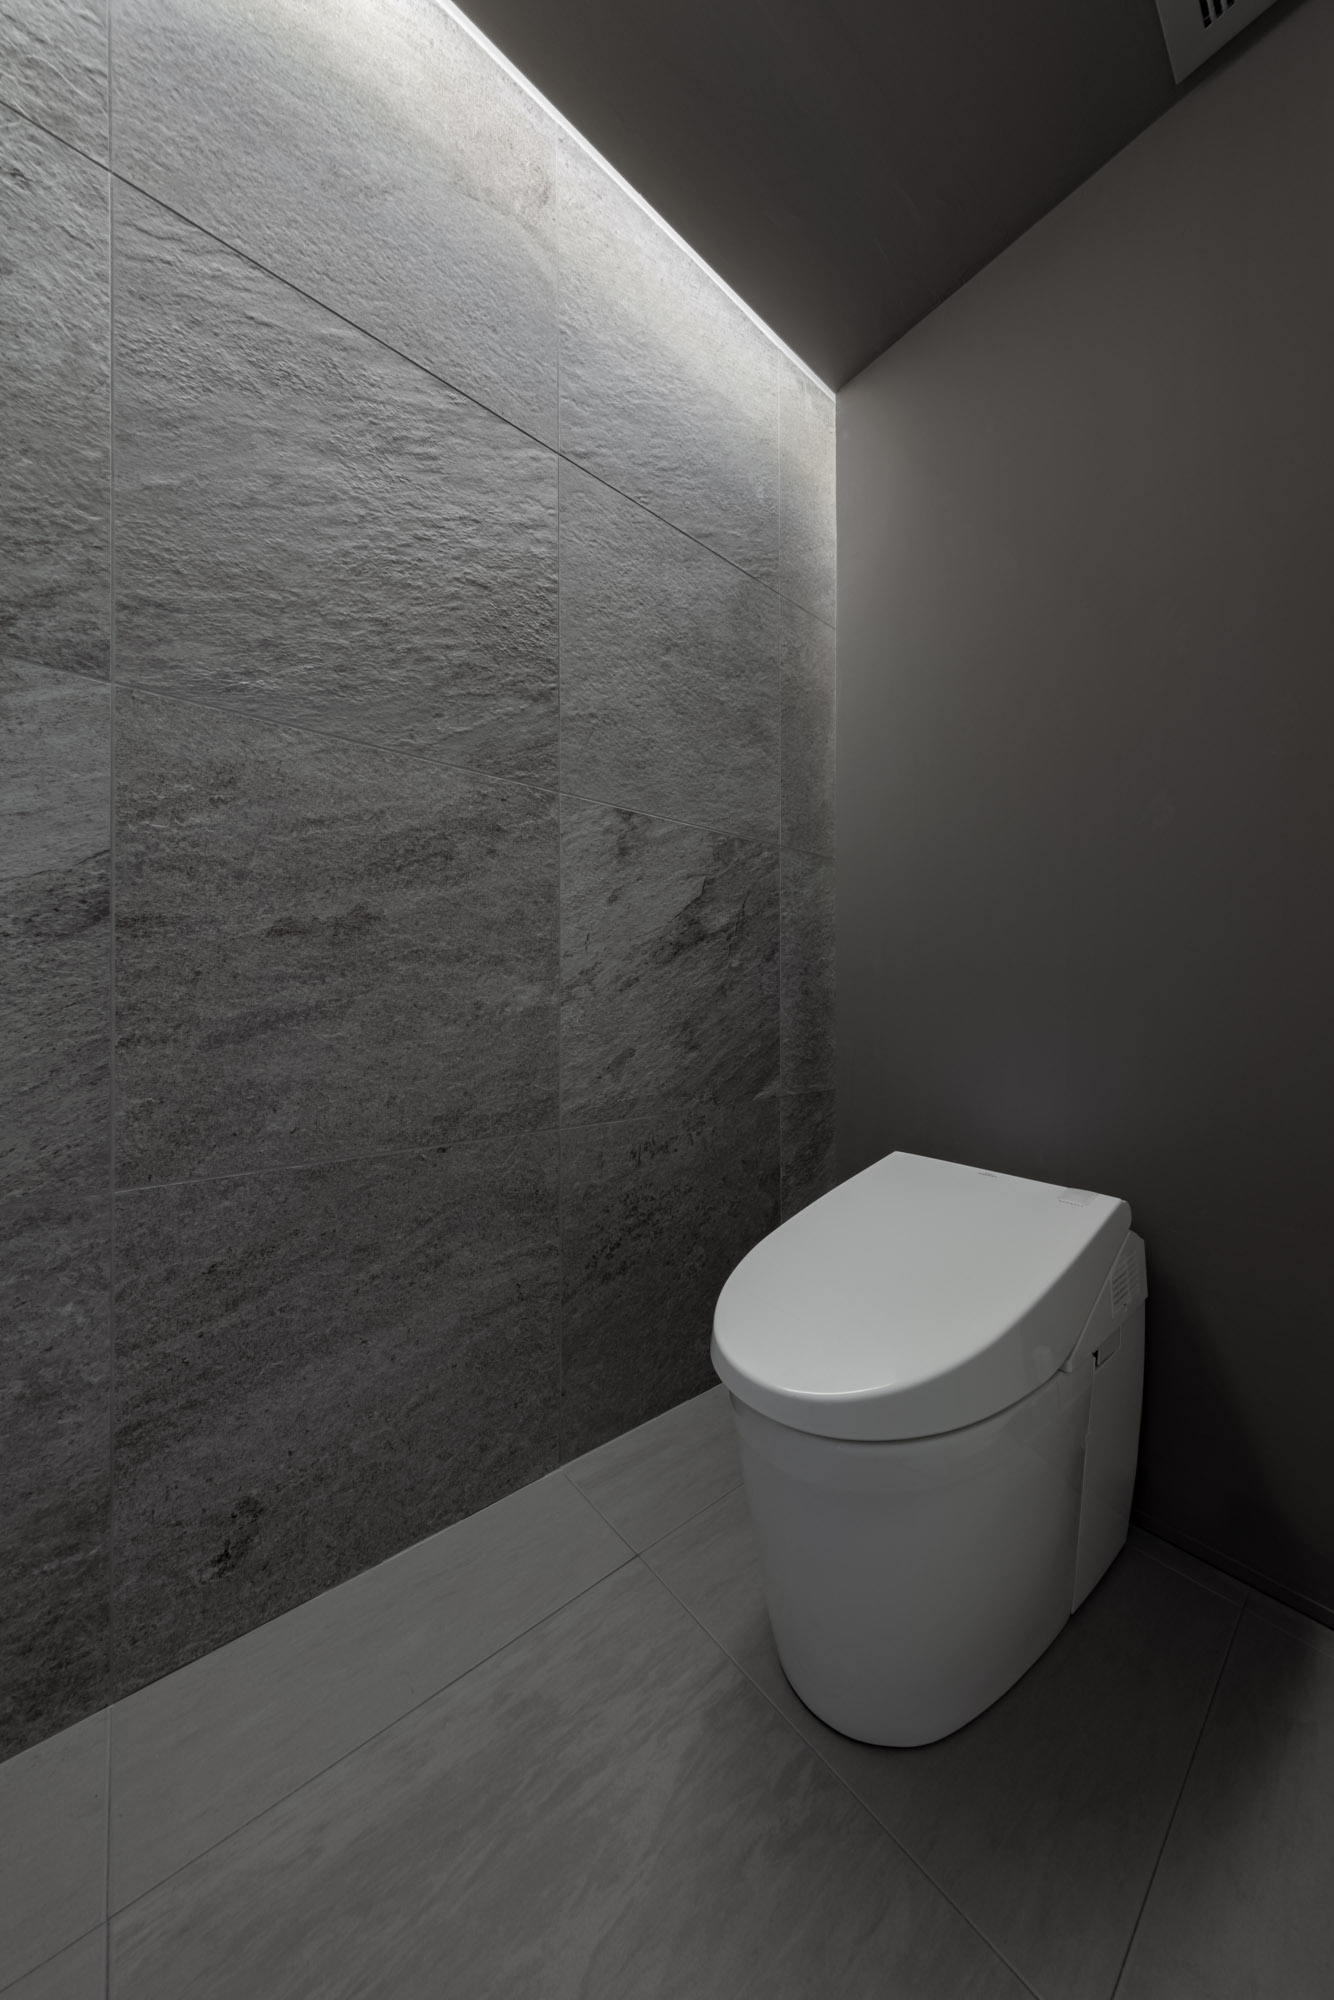 壁紙をグレーで統一し、間接照明をもうけたタンクレスのトイレがある空間・デザイン住宅